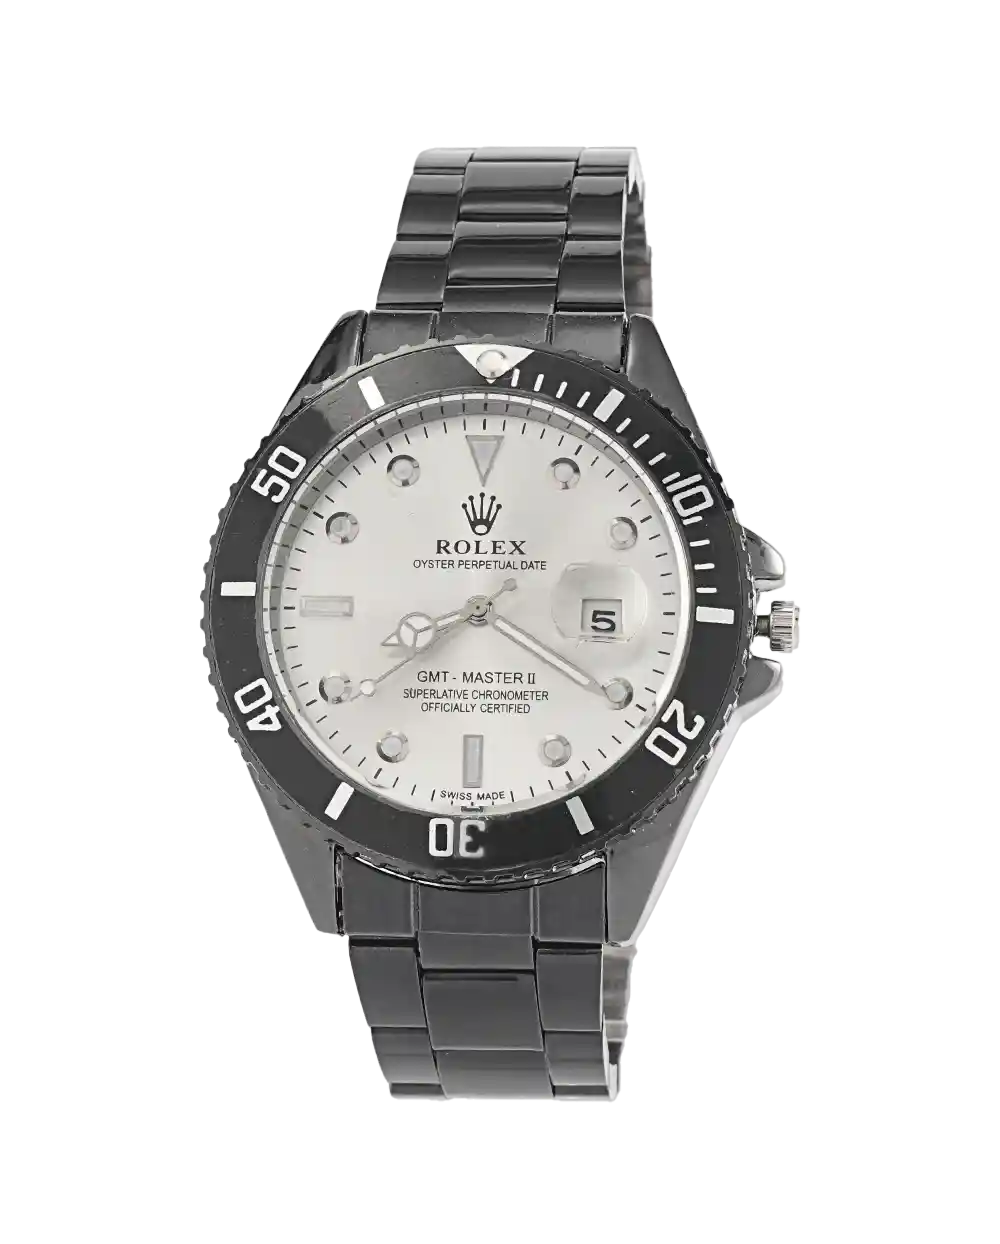 خرید ساعت مچی مردانه رولکس ROLEX طرح ساب مارین مدل 1866 بند استیل با رنگ مشکی و صفحه ی سفید قیمت 350 هزارتومن به همراه ارسال رایگان و جعبه